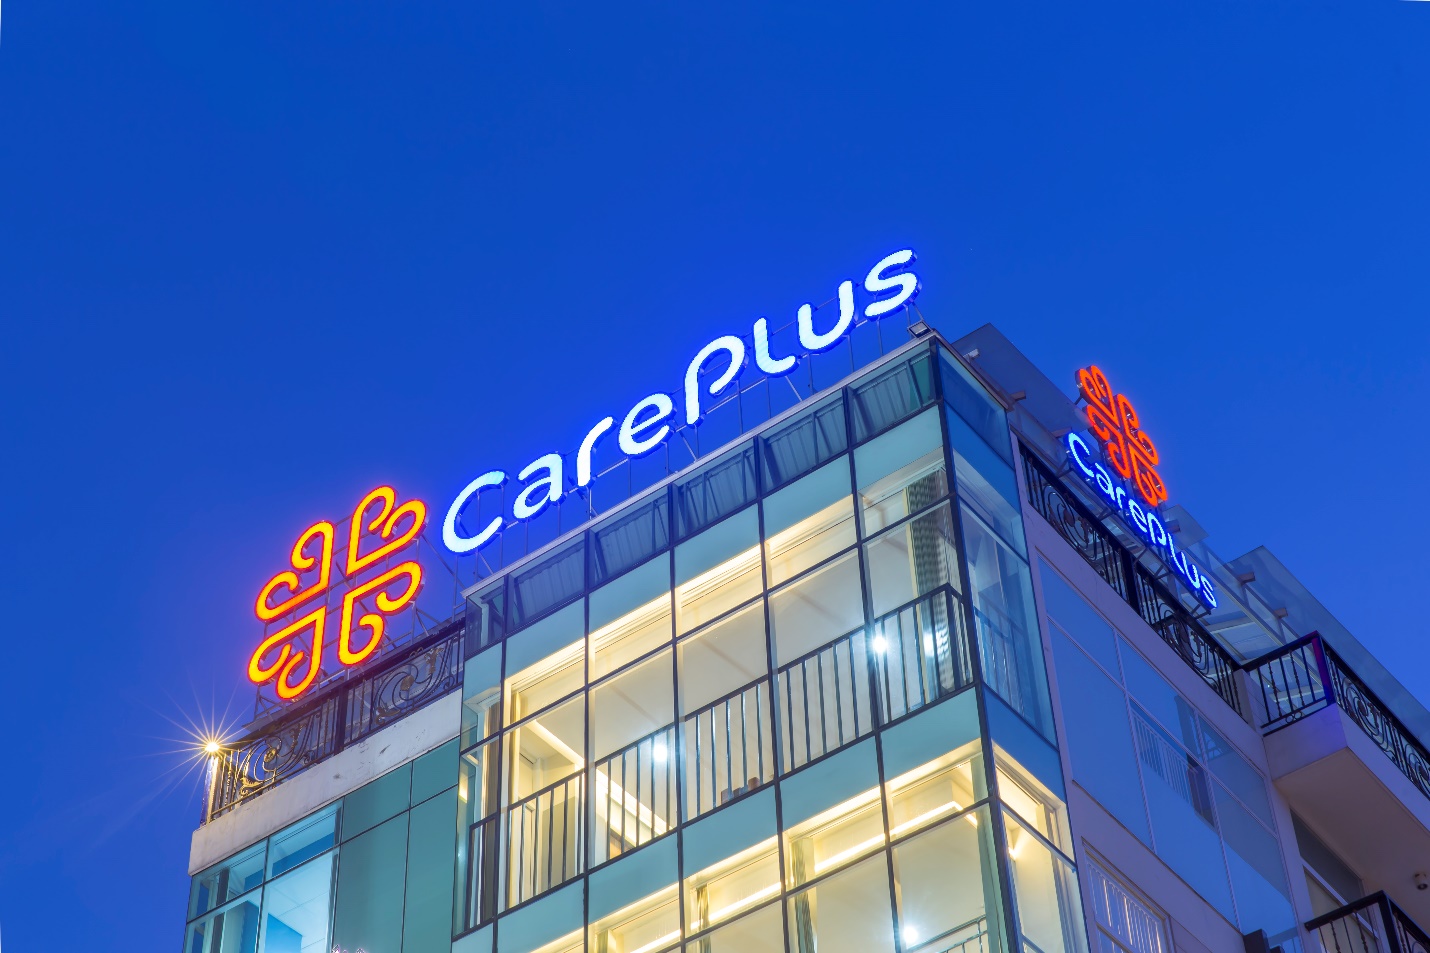 An tâm chăm sóc sức khỏe với nhà cung cấp dịch vụ y tế CarePlus - Ảnh 8.